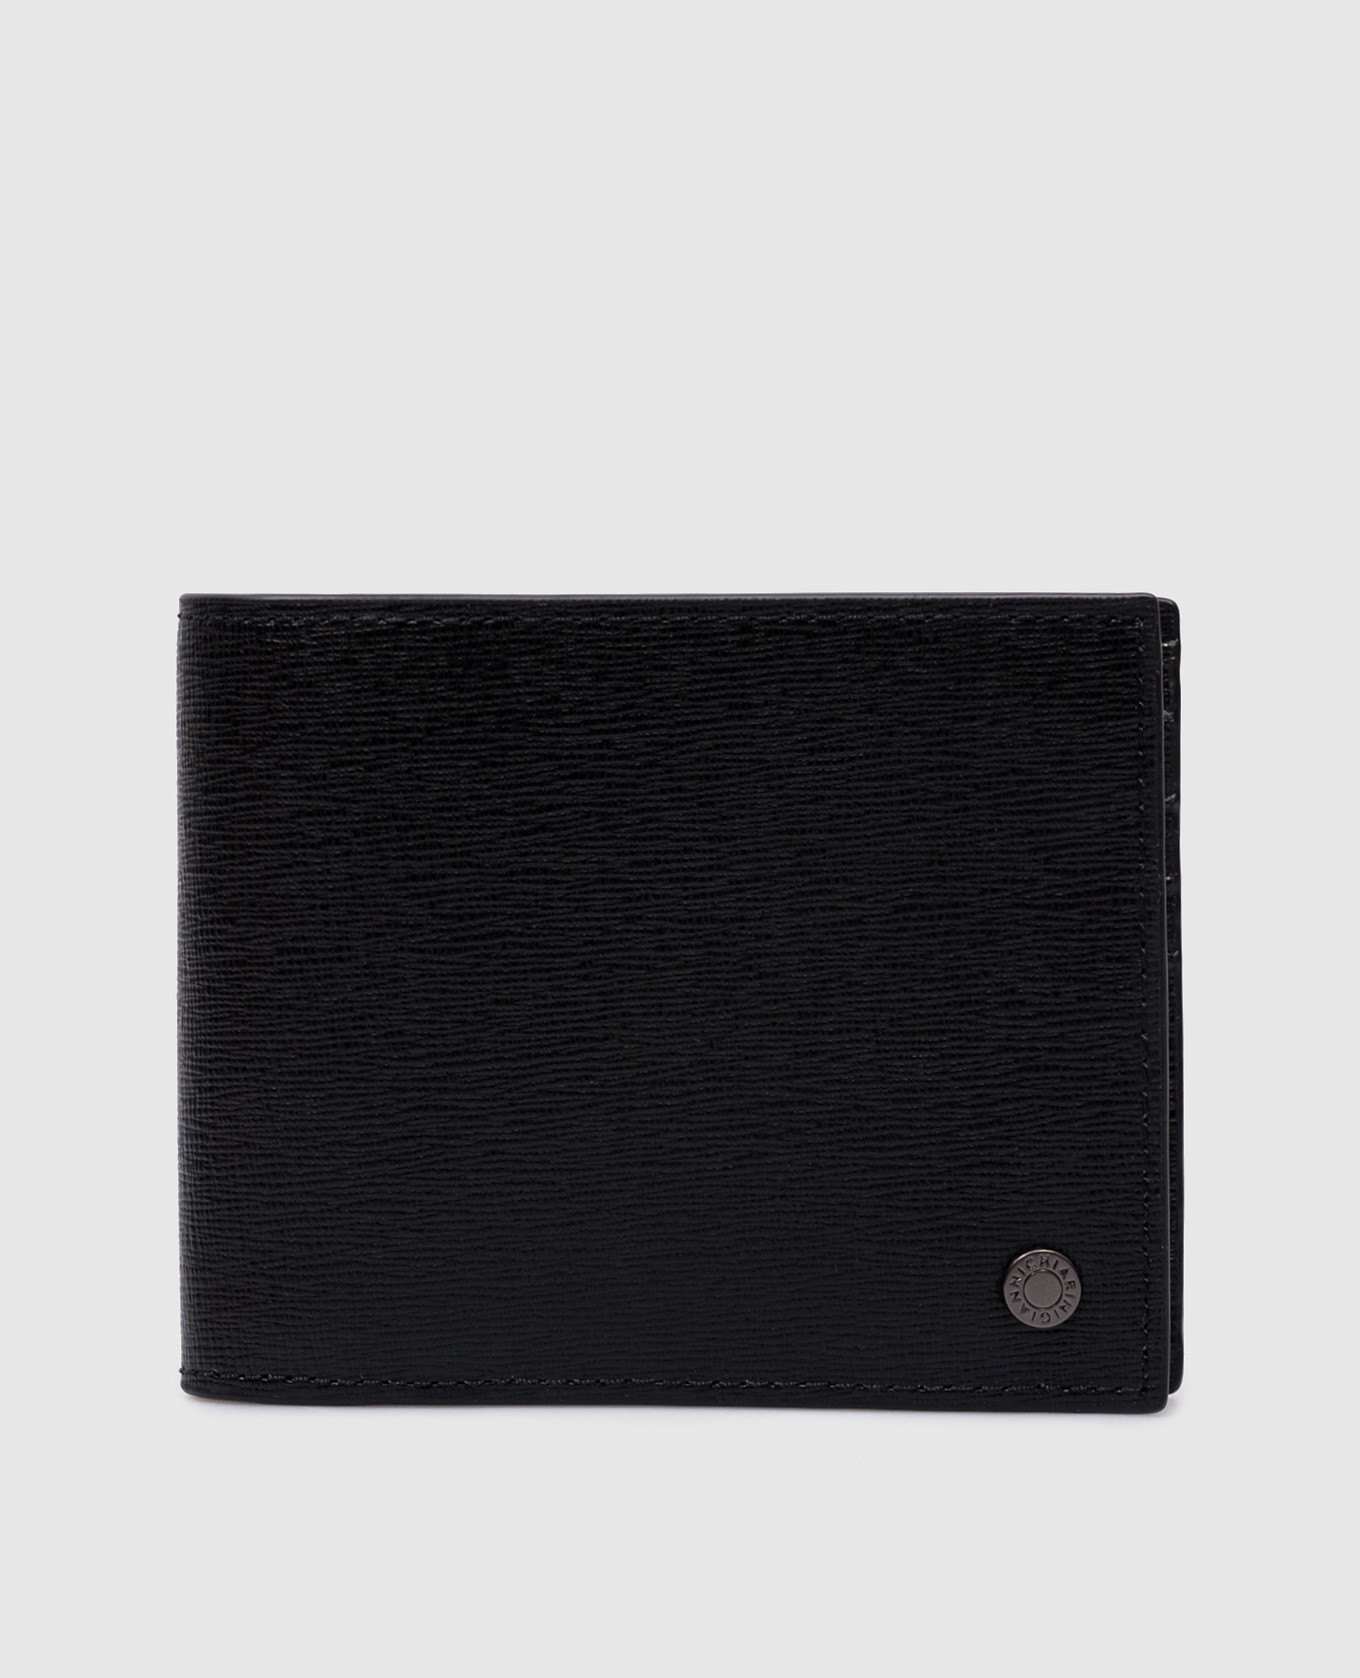 Черный кожаный портмоне с гравировкой логотипа.